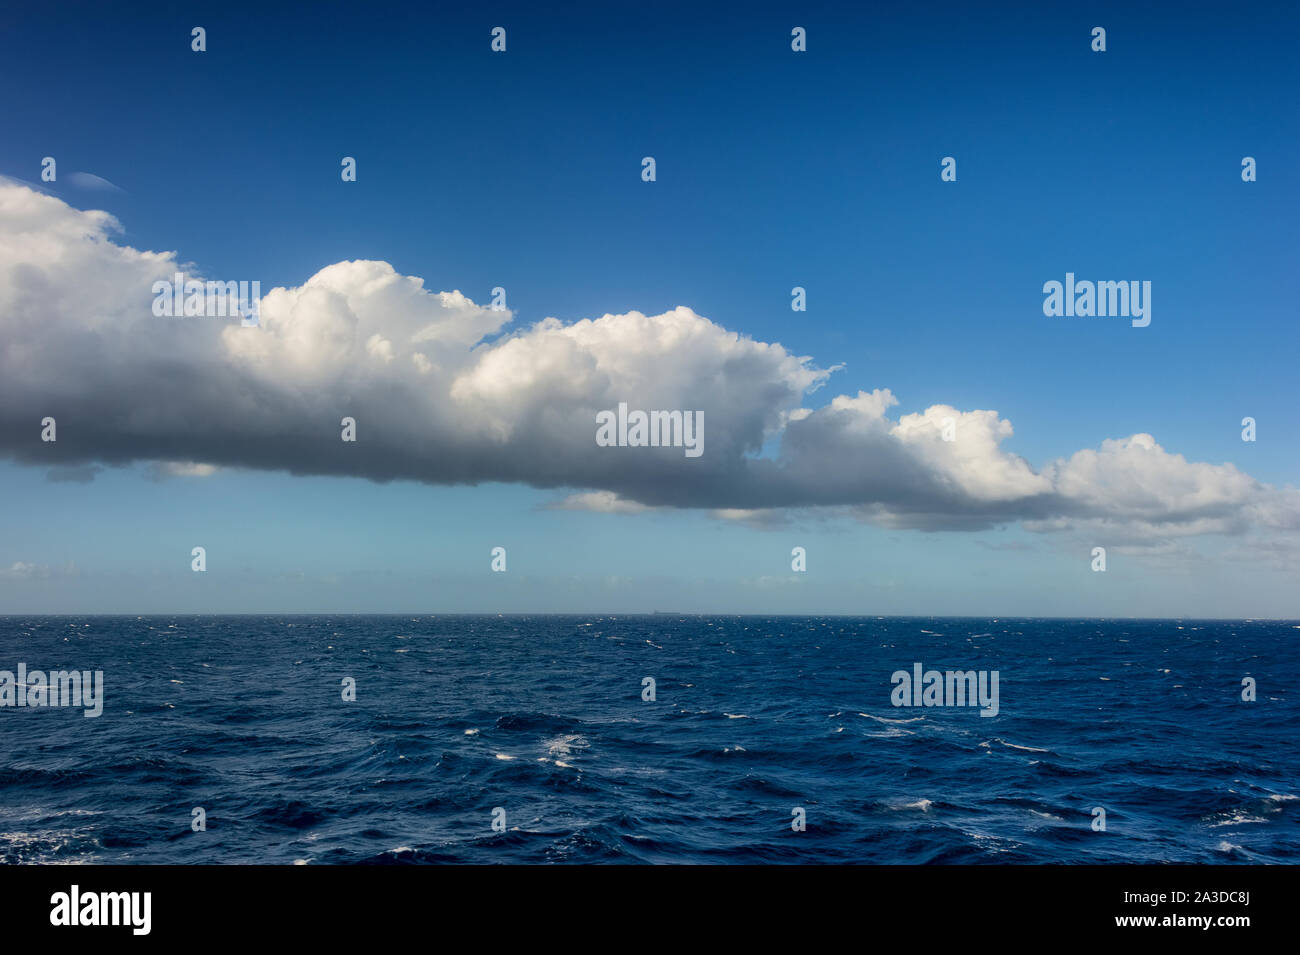 Image de fond de l'océan Atlantique avec les formations de nuages dans le ciel Banque D'Images